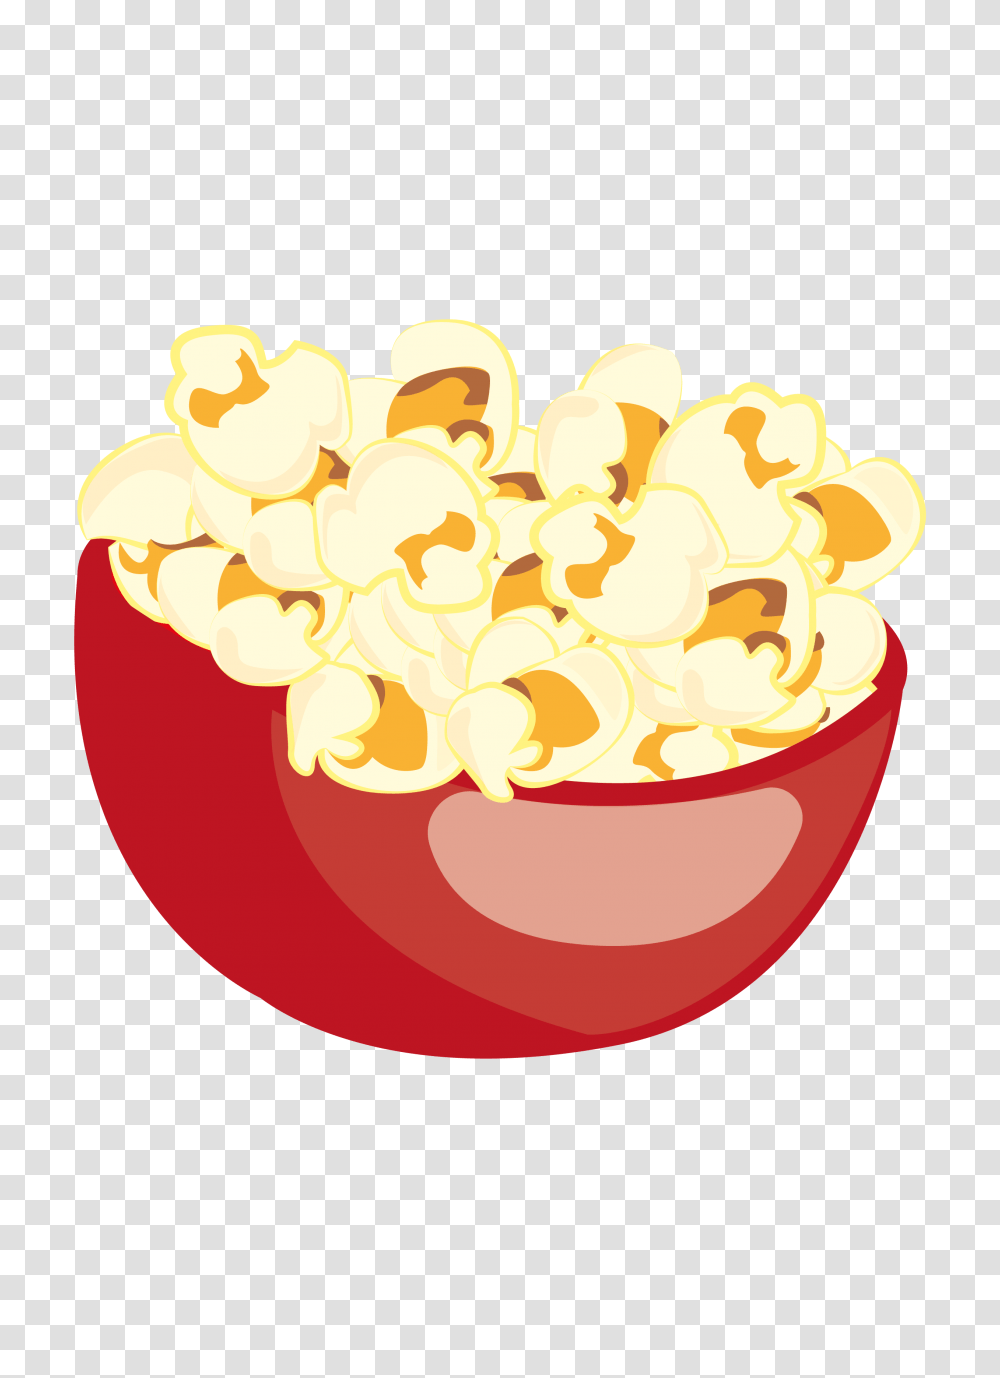 Popcorn Images Free Download, Food, Snack Transparent Png